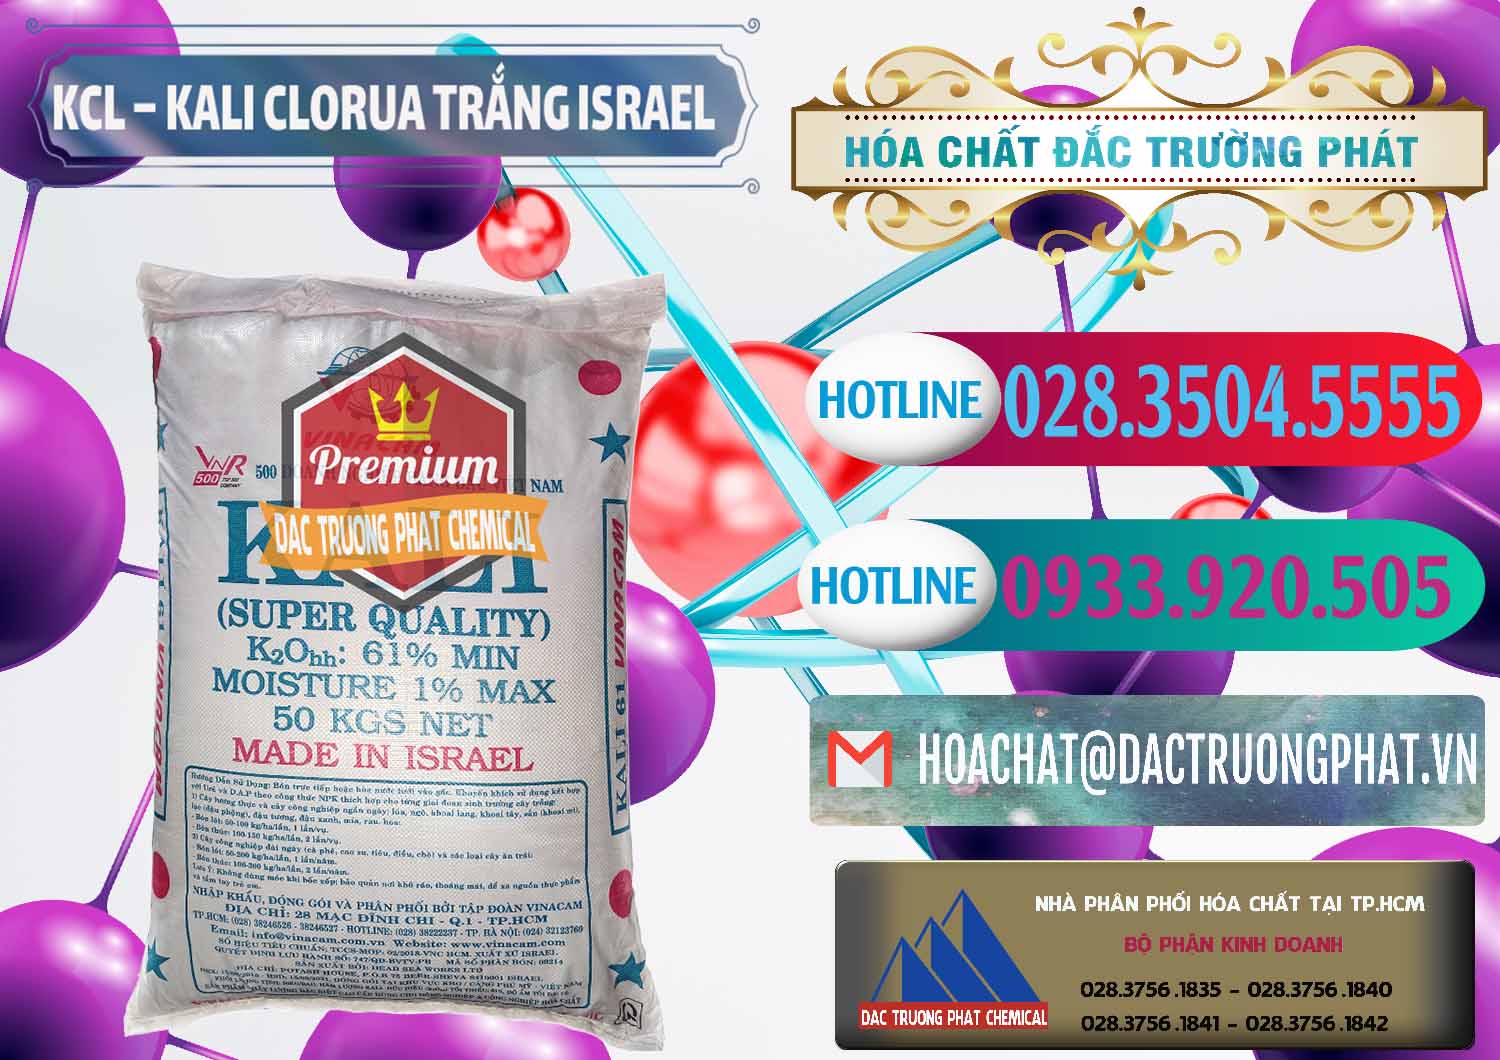 Cung cấp & bán KCL – Kali Clorua Trắng Israel - 0087 - Nơi chuyên bán và phân phối hóa chất tại TP.HCM - truongphat.vn